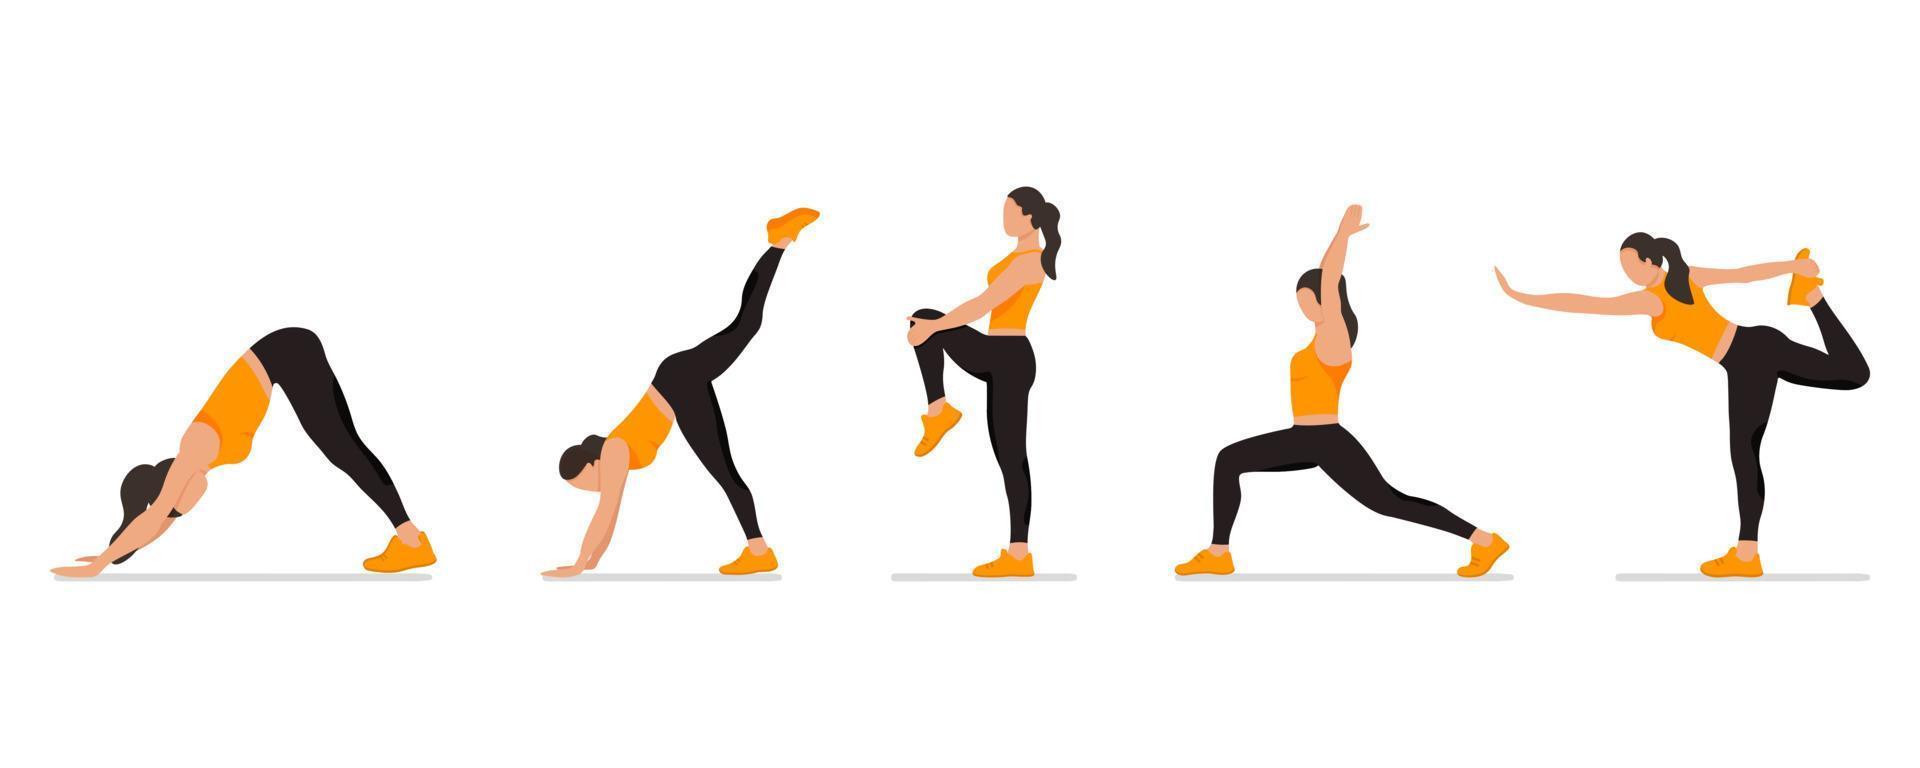 Reihe von Posen gesichtslose Frau Yoga und Stretching, Sammlung weiblicher Cartoon-Yoga-Positionen isoliert auf weißem Hintergrund, Ganzkörper-Yoga-Training vektor